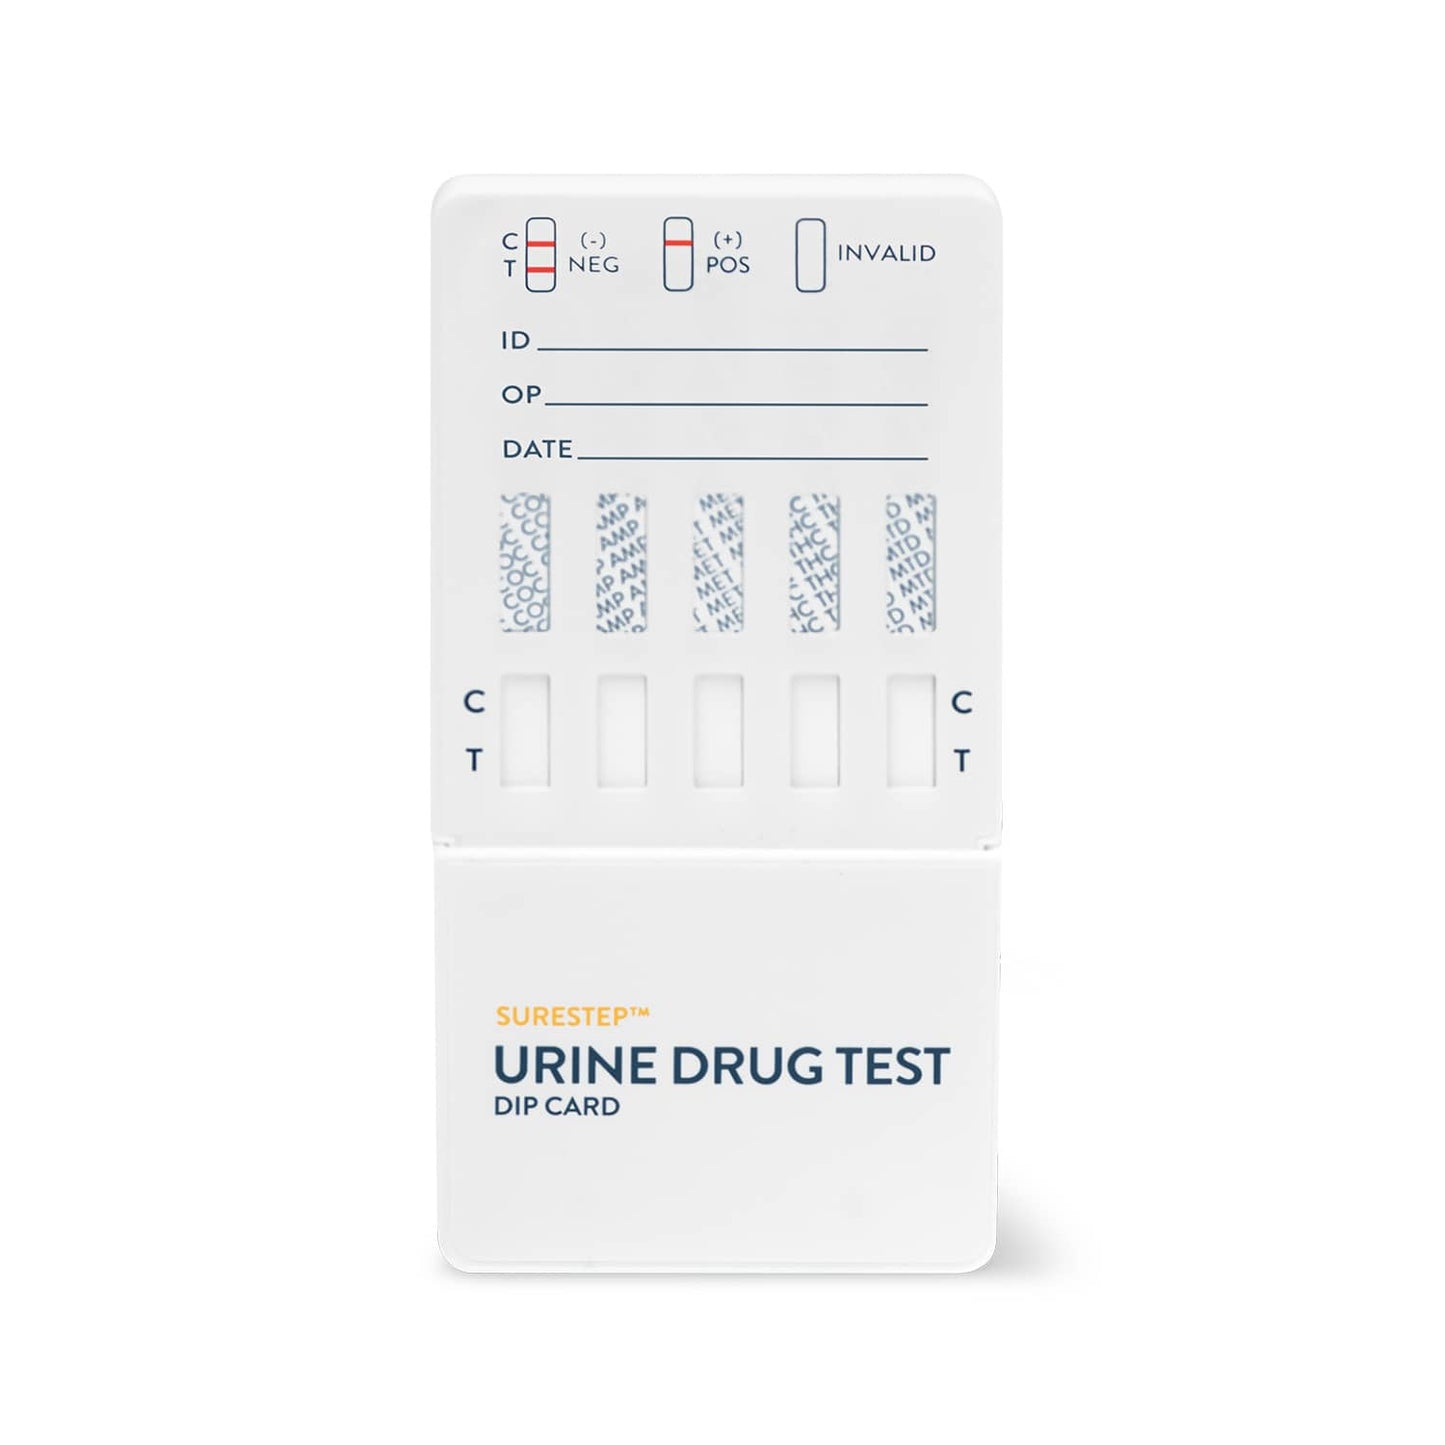 Surestep™ Urine Drug Test Dip Card (6) + Svt For The Qualitative Detection Of Multiple Drugs In Urine